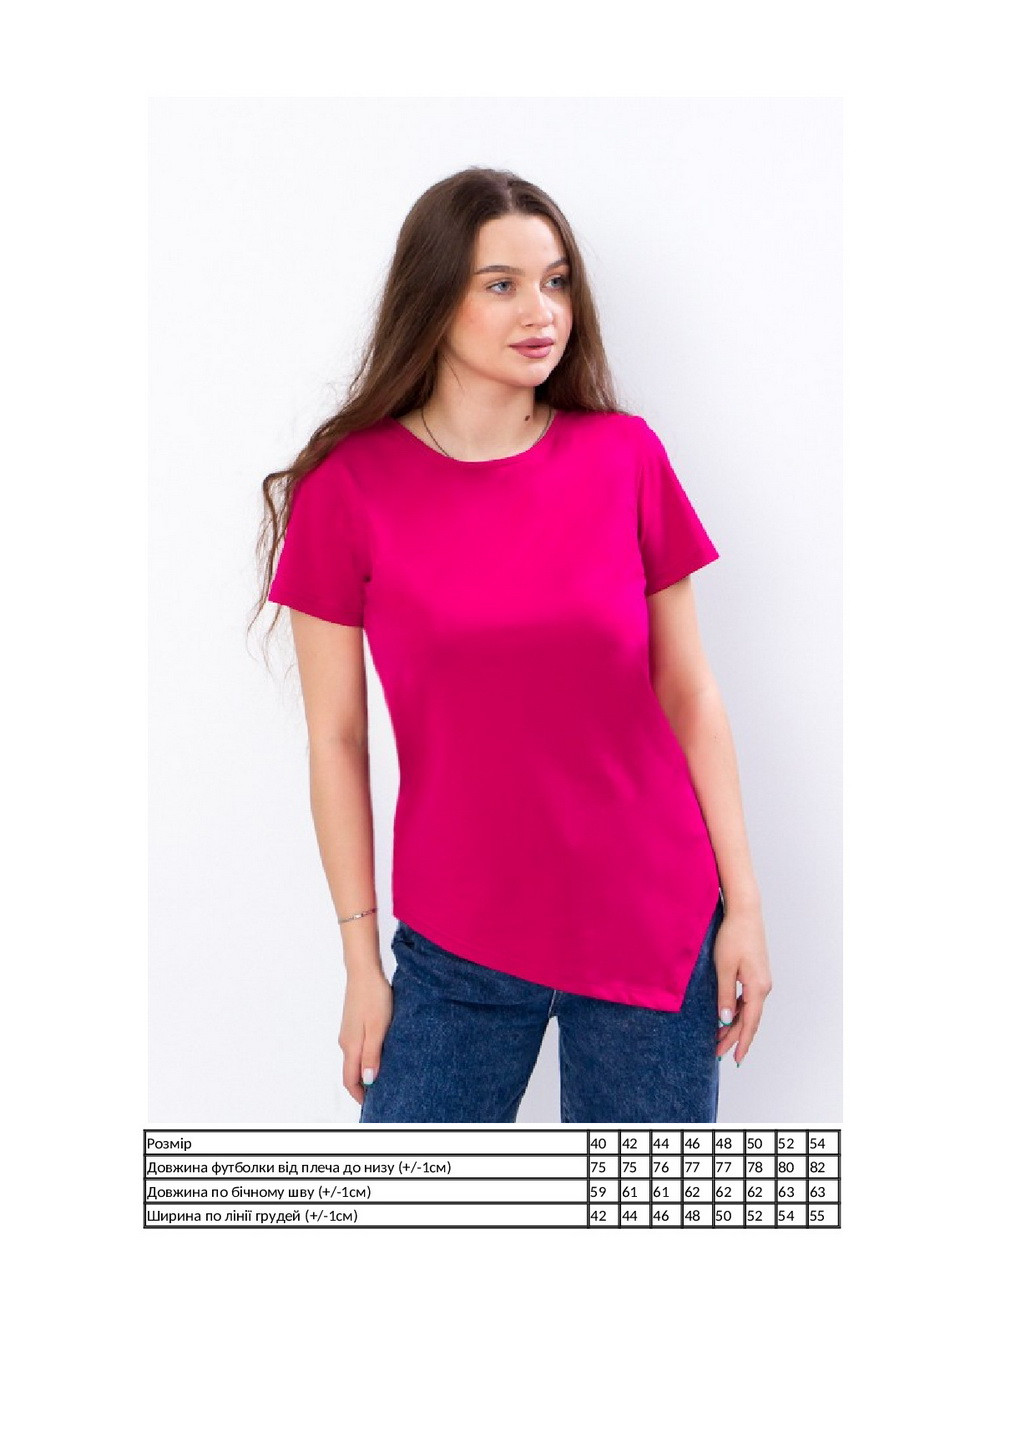 Красная летняя футболка женская с коротким рукавом KINDER MODE